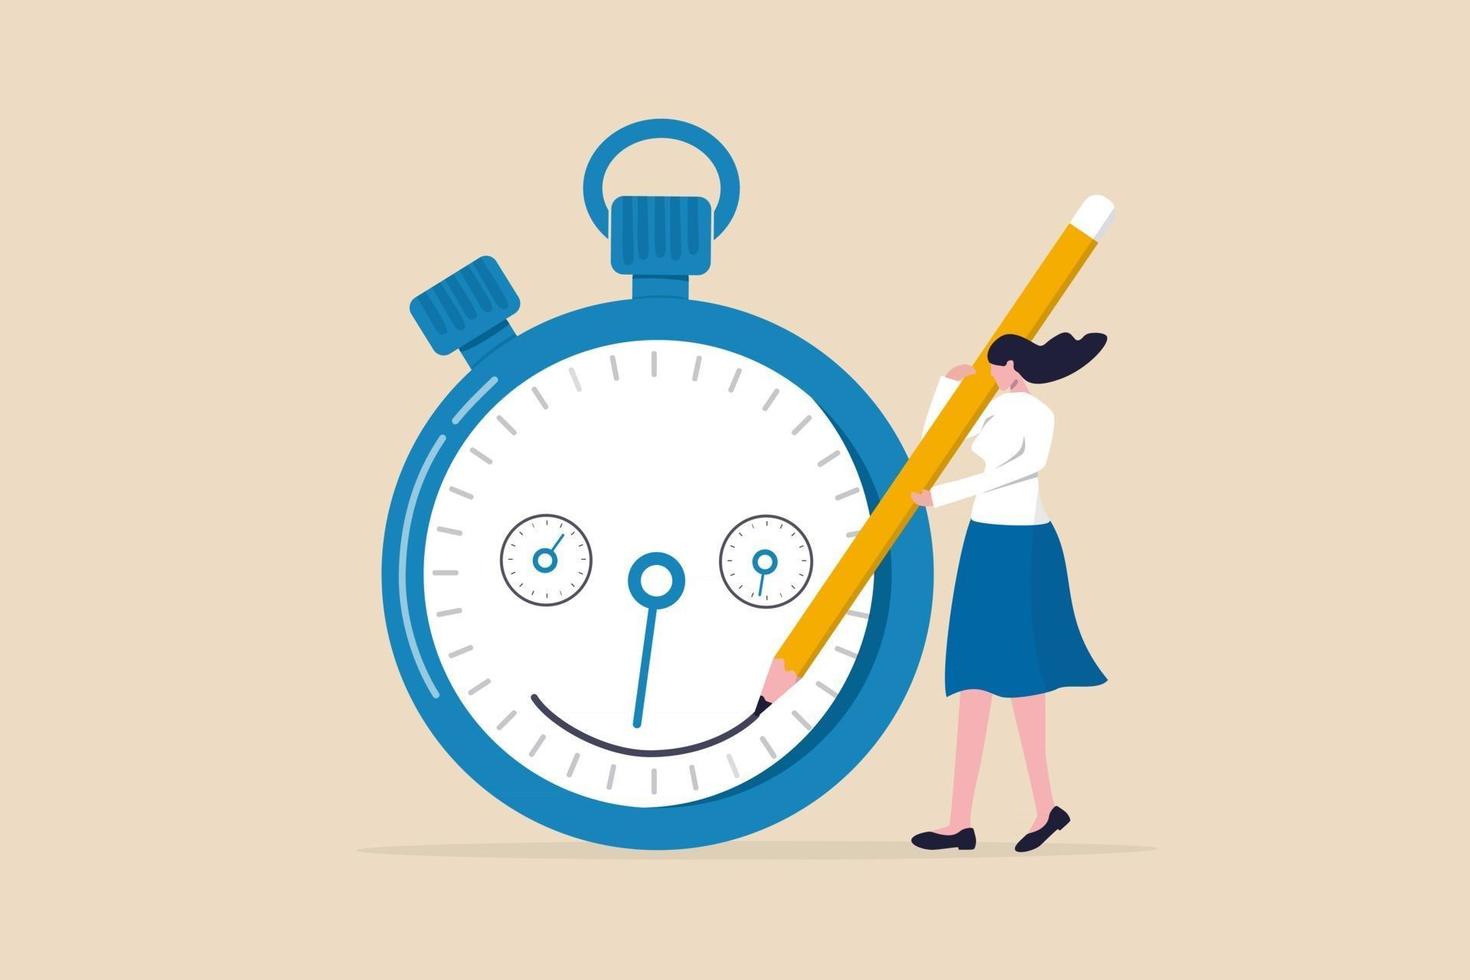 tidshantering, hantera projektets deadline, förbättra arbetseffektiviteten eller produktiviteten för att avsluta projektet i tidskoncept, glad entreprenörkvinna som drar leende ansikte i tid räknar ner tidklockan. vektor